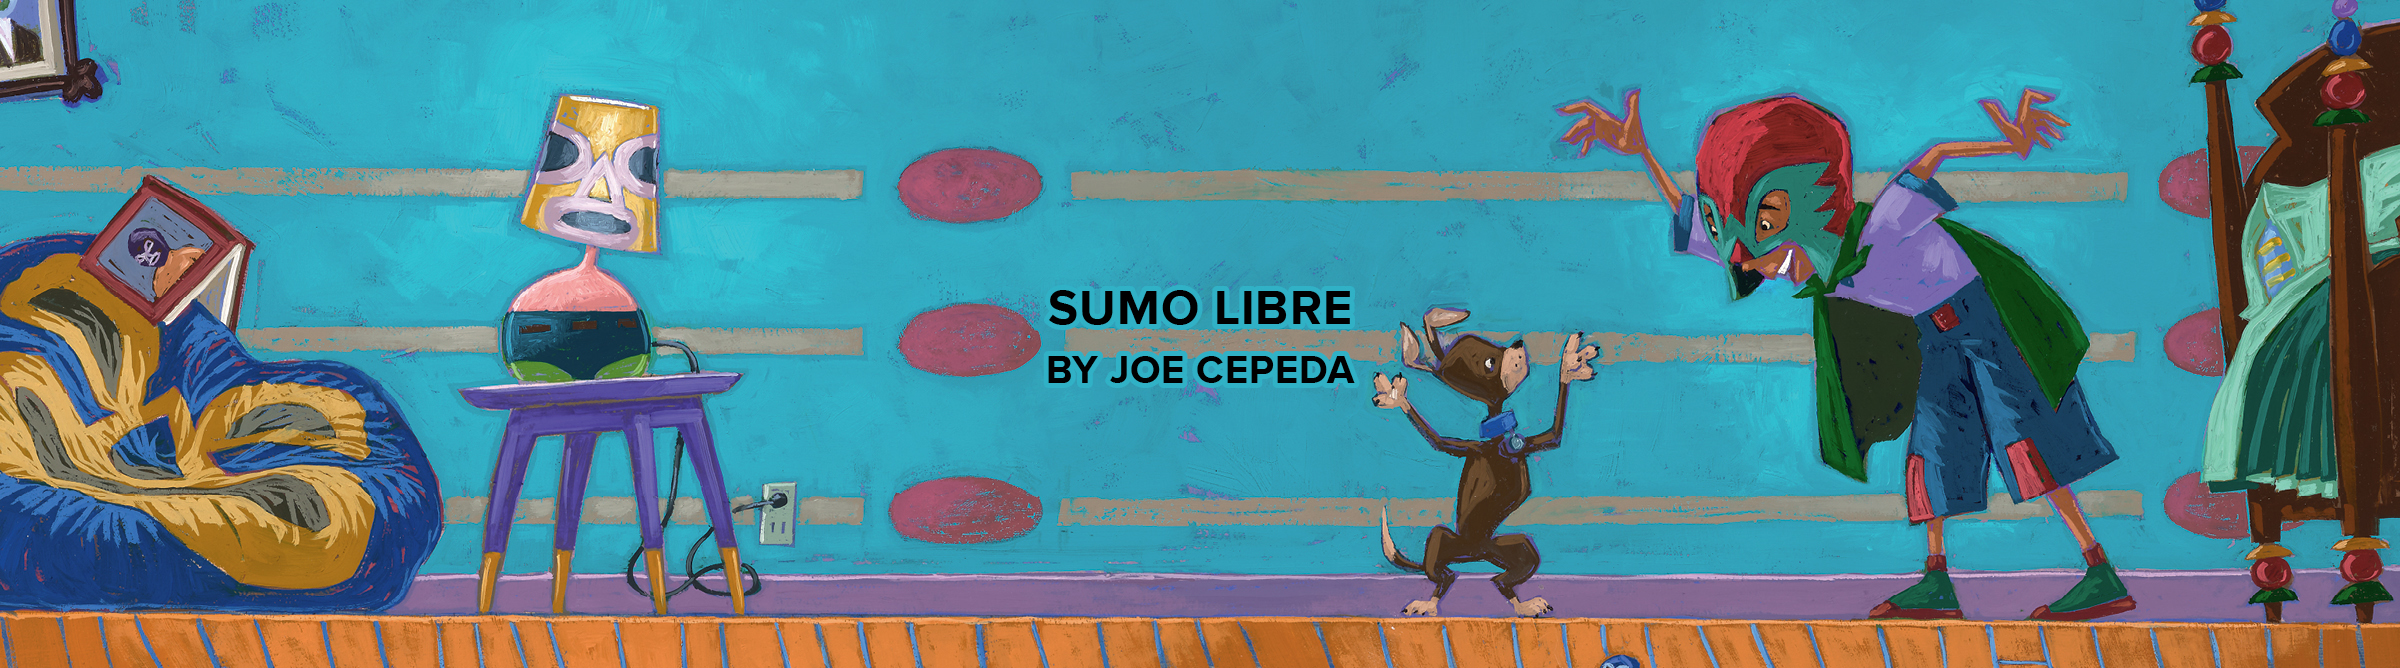 'Sumo Libre' by Joe Cepeda